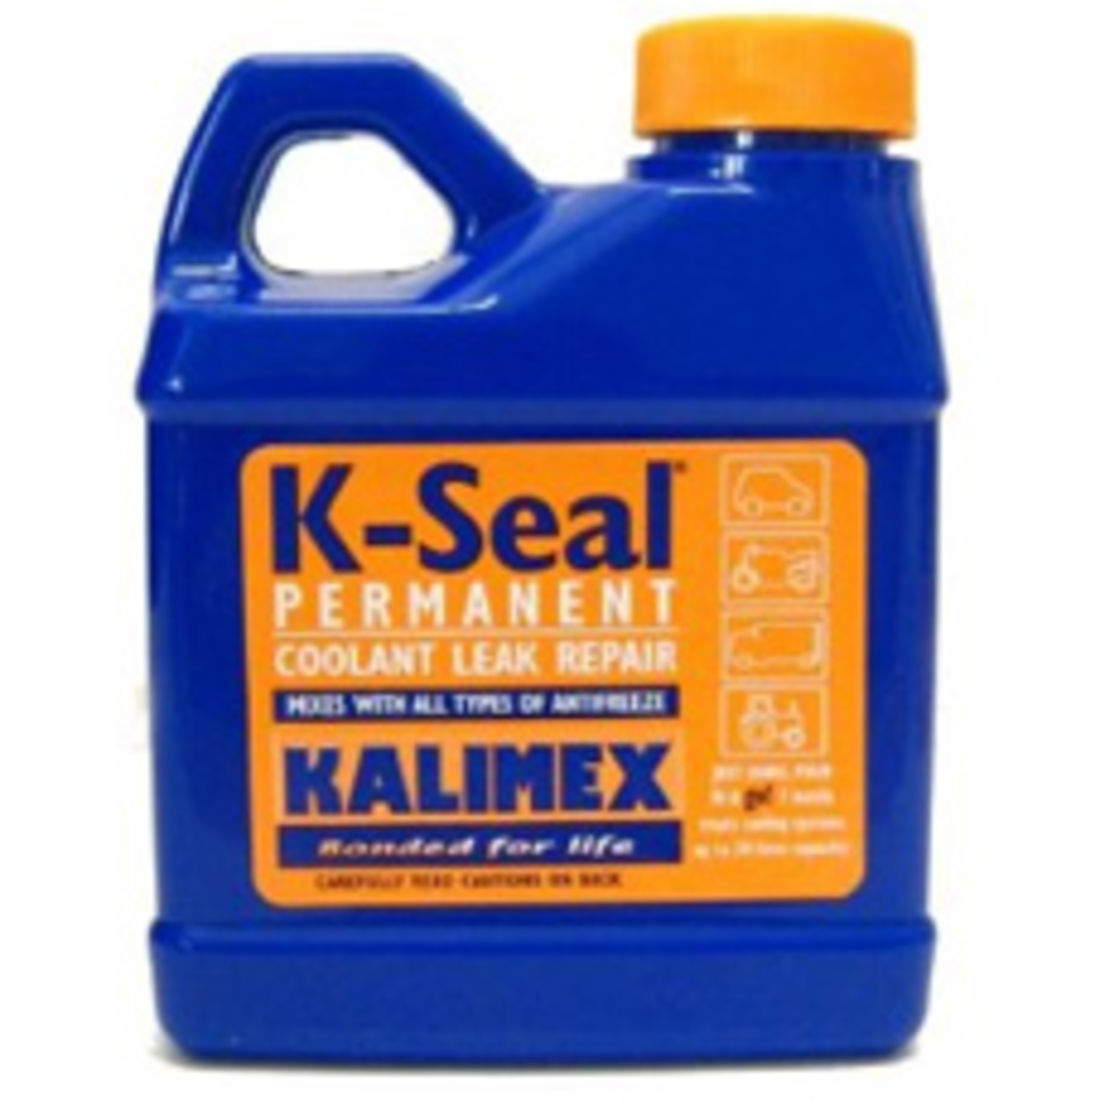 K-Seal Permanent Coolant Leak Repair